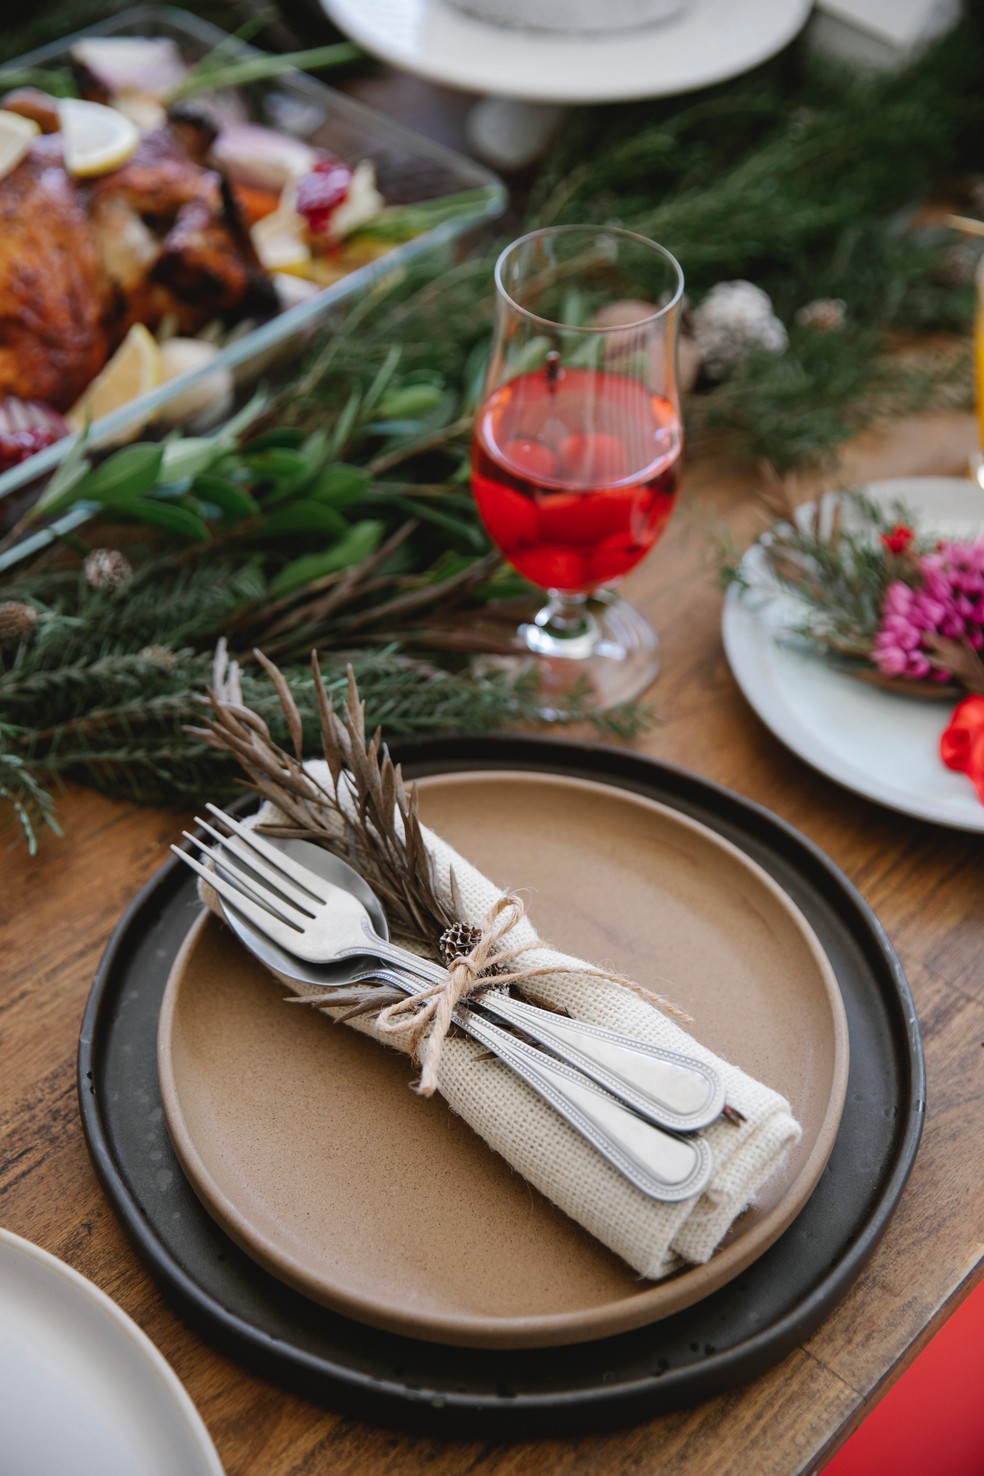 Louça para as refeições da ceia com decoração natalina — Foto: Tim Douglas/Pexels